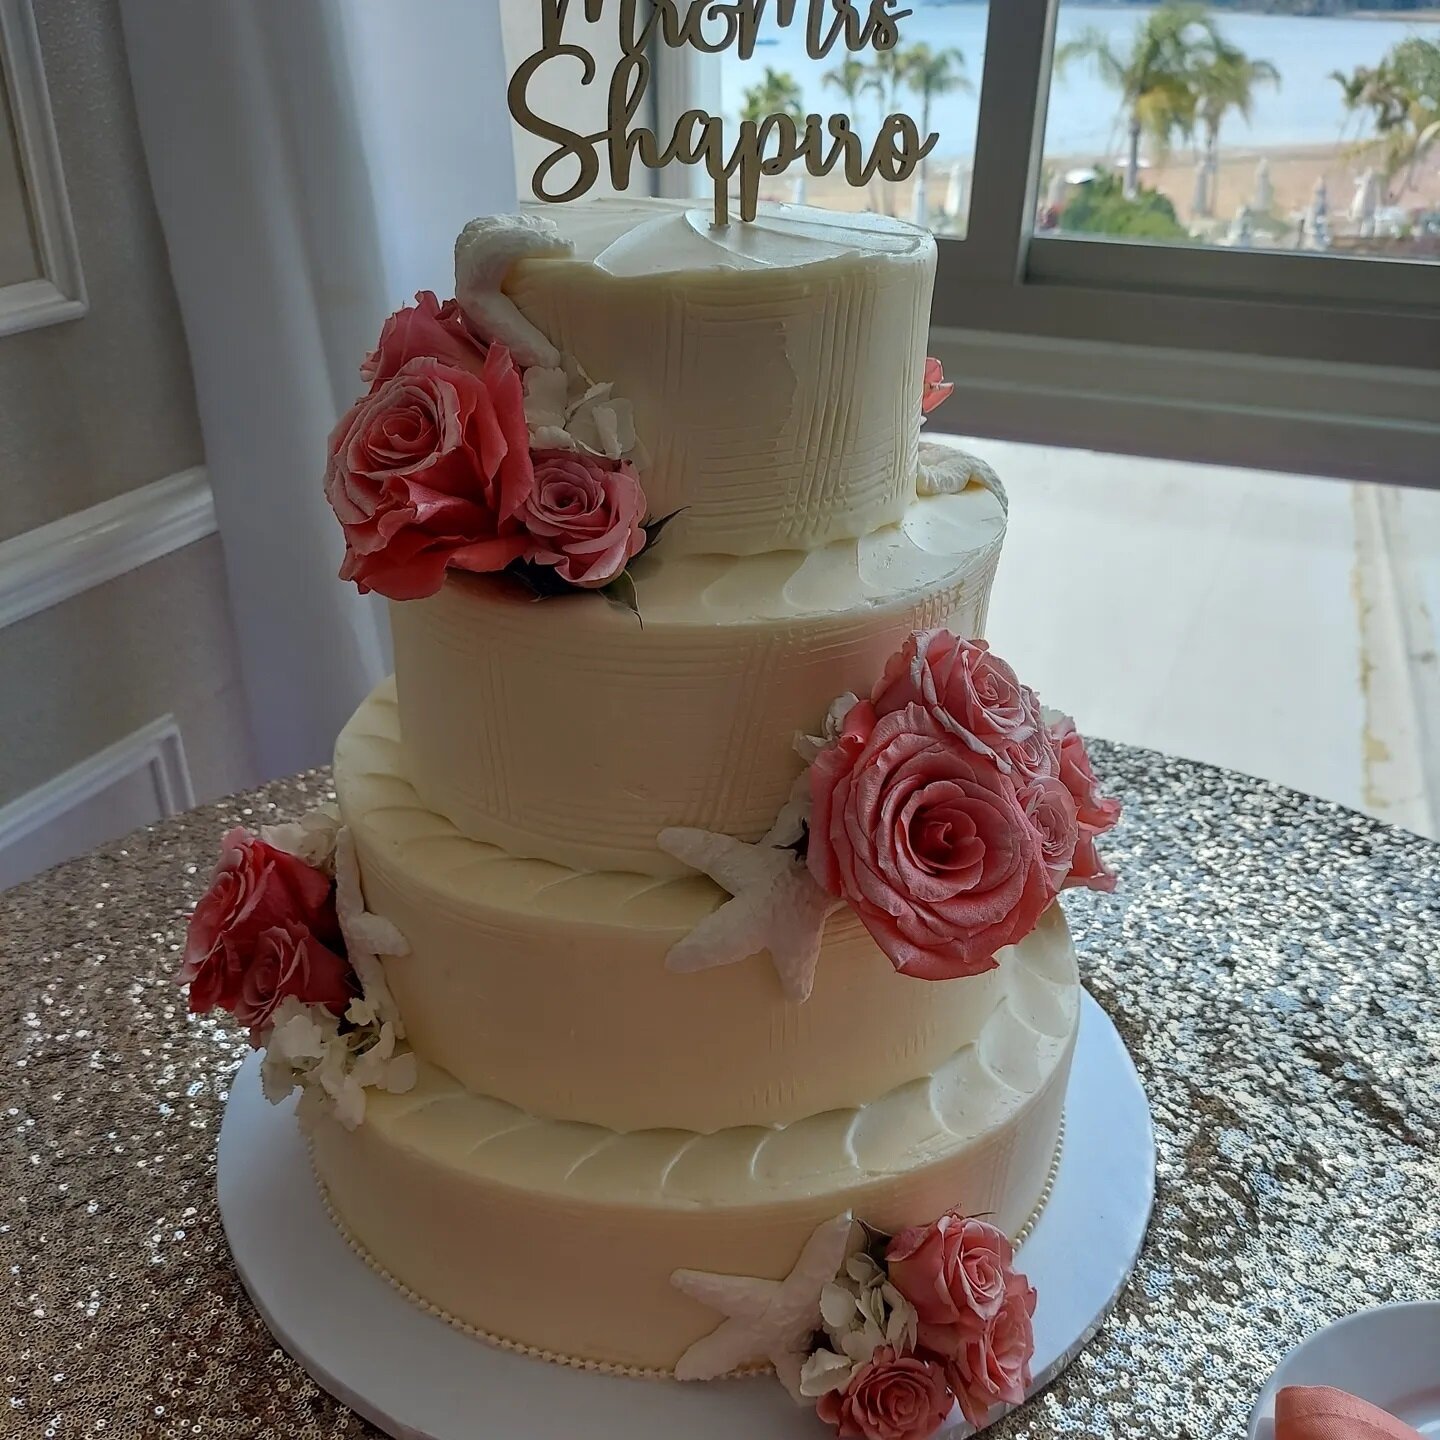 @anthonysoceanview #ctshorelinewedding #weddingcake #donuts #weddingcakes